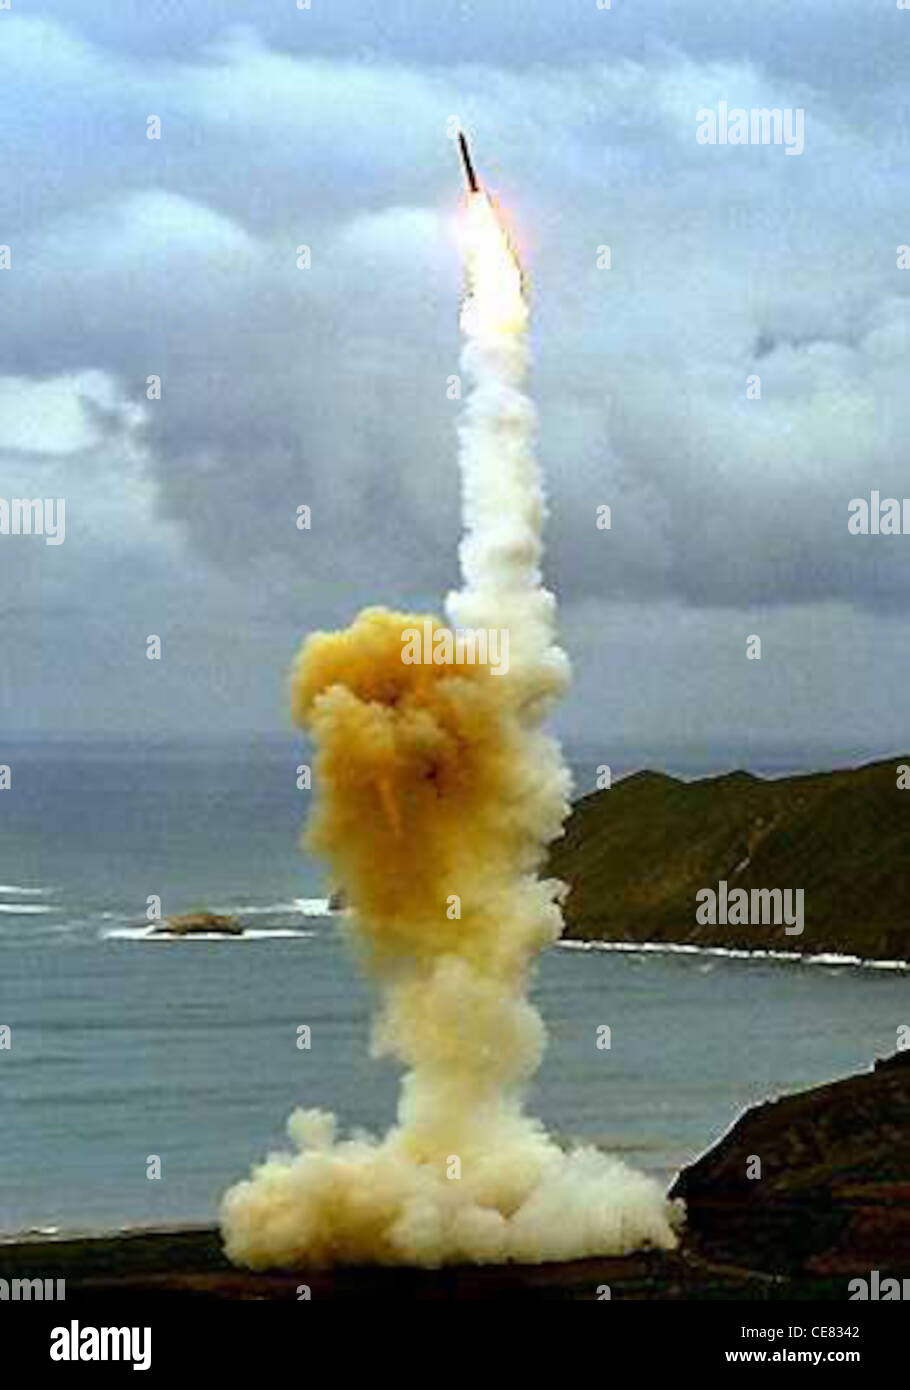 Un missile LGM-30 Minuteman III s'est arrêté dans l'air après un lancement d'essai. Le Minuteman est un système d'armes stratégiques utilisant un missile balistique de portée intercontinentale. Banque D'Images